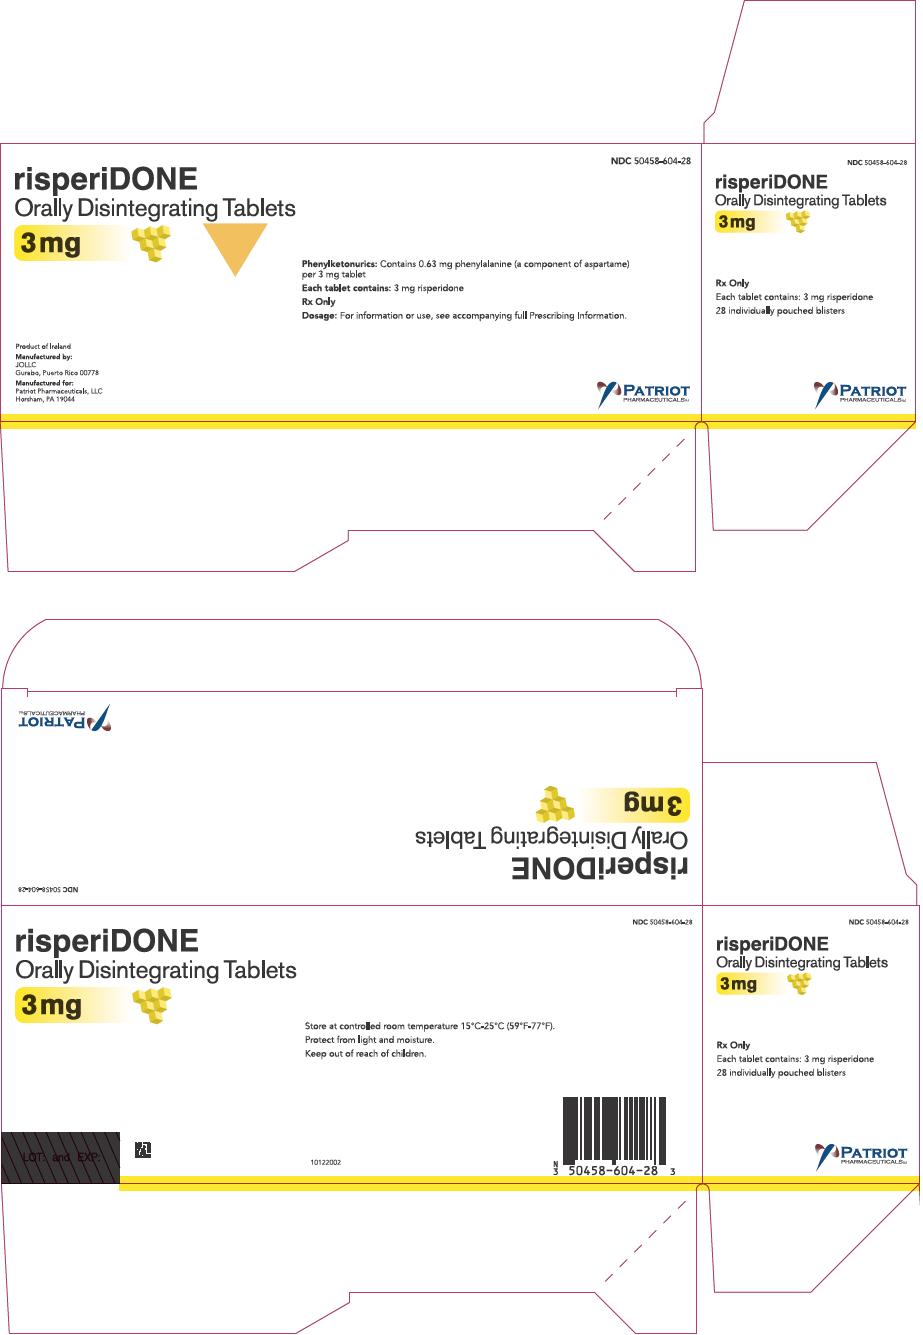 PRINCIPAL DISPLAY PANEL -  2 mg Tablet Carton